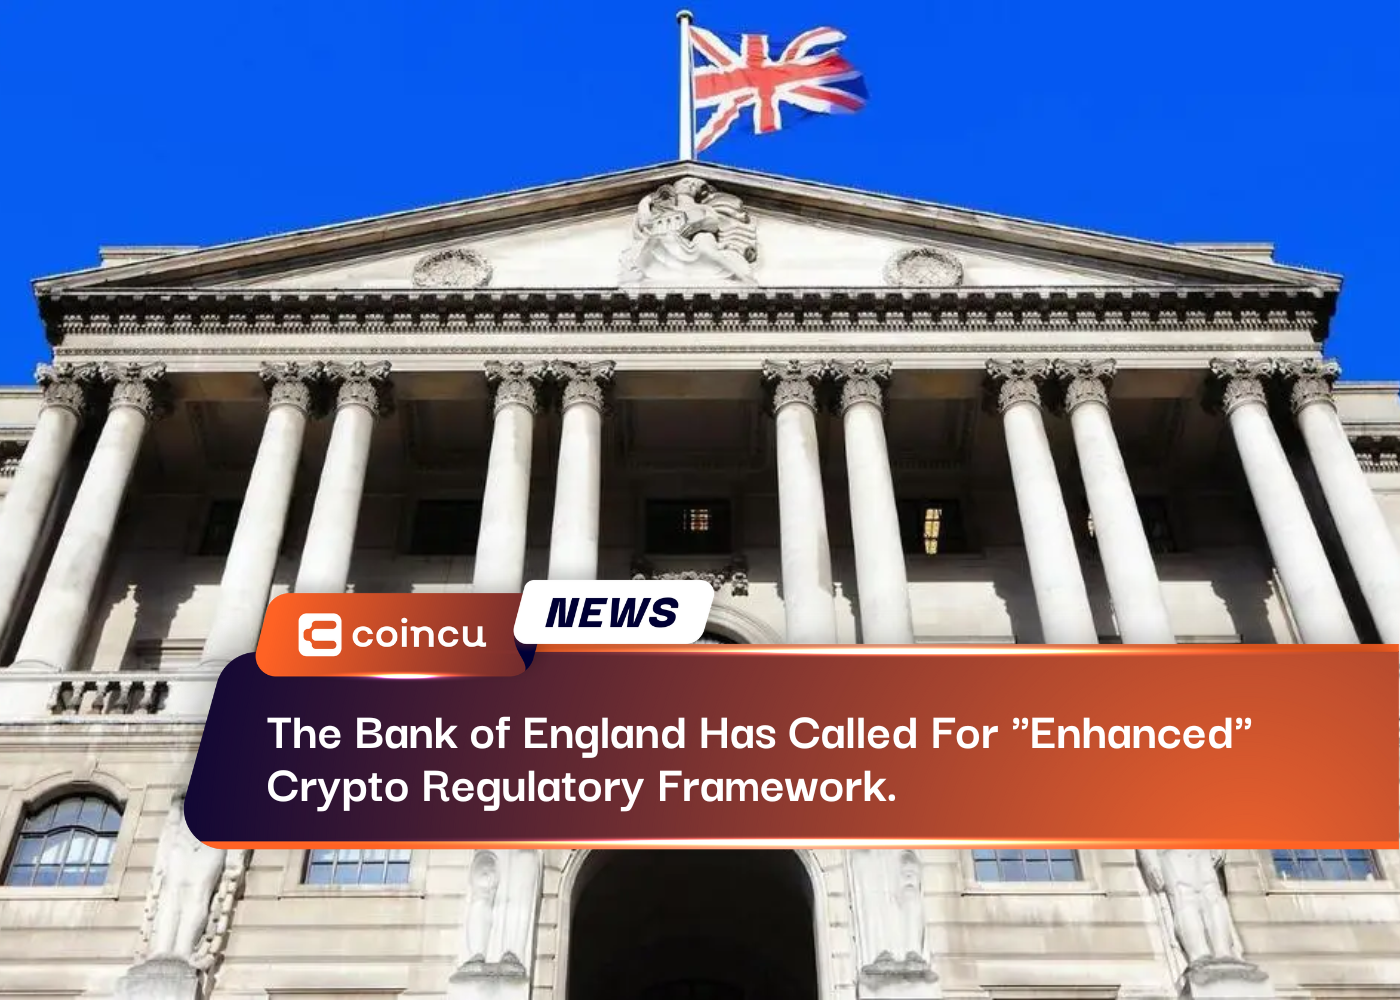 İngiltere Merkez Bankası "Geliştirilmiş" Kripto Düzenleme Çerçevesi Çağrısında Bulundu.